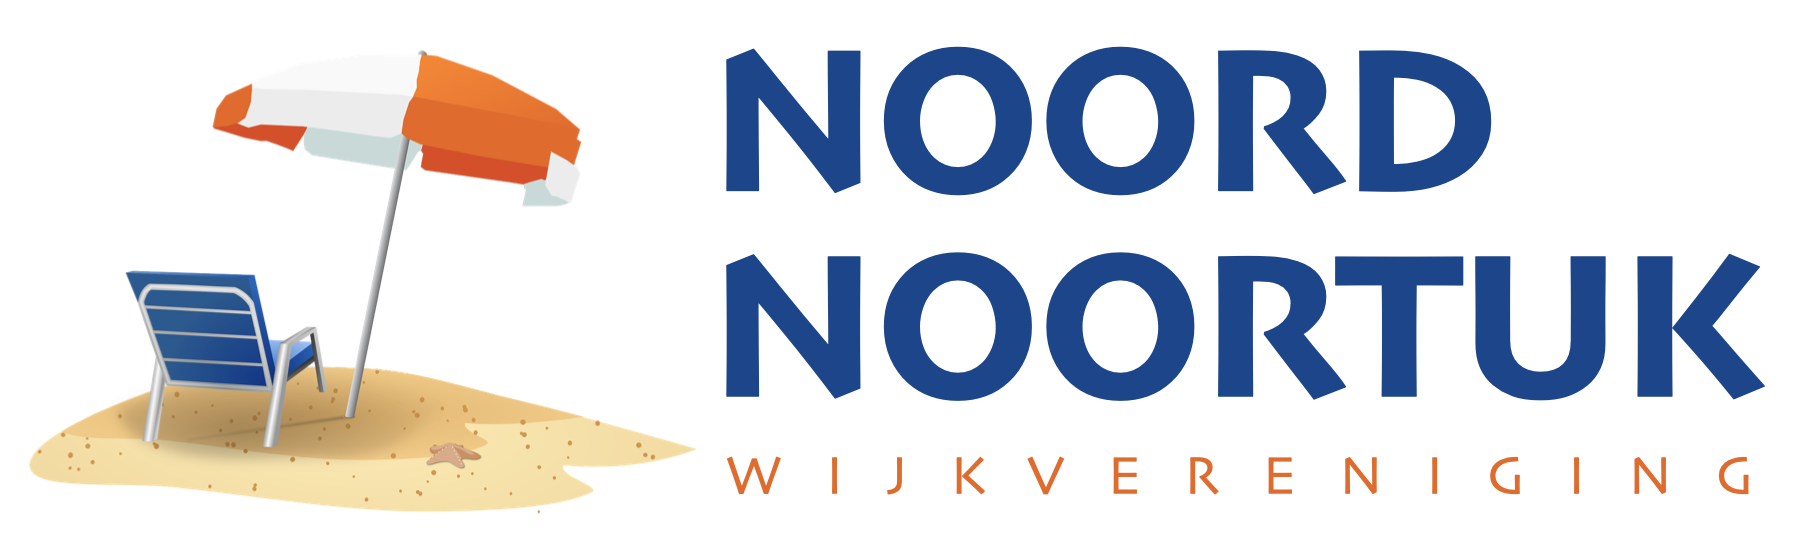 Noord Noortuk